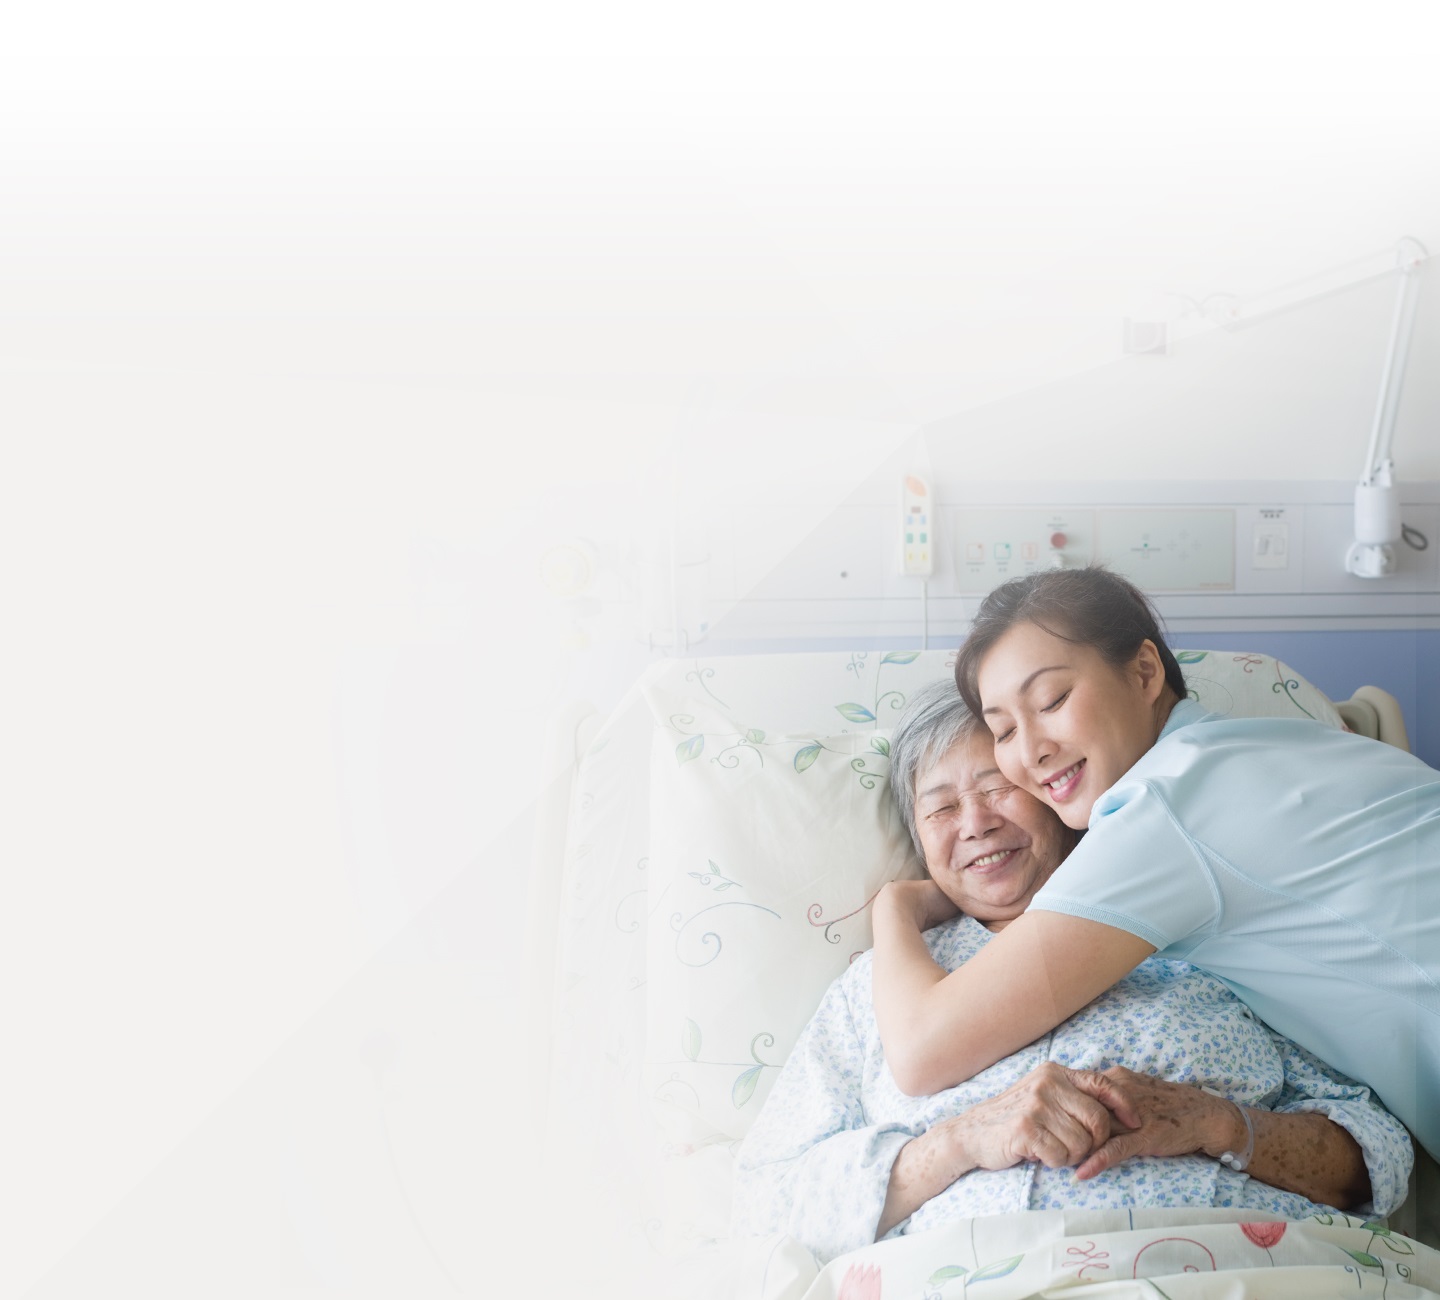 Νοσηλεύτρια που αγκαλιάζει μια ασθενή ξαπλωμένη στο κρεβάτι της στο νοσοκομείο – και οι δύο χαμογελούν.